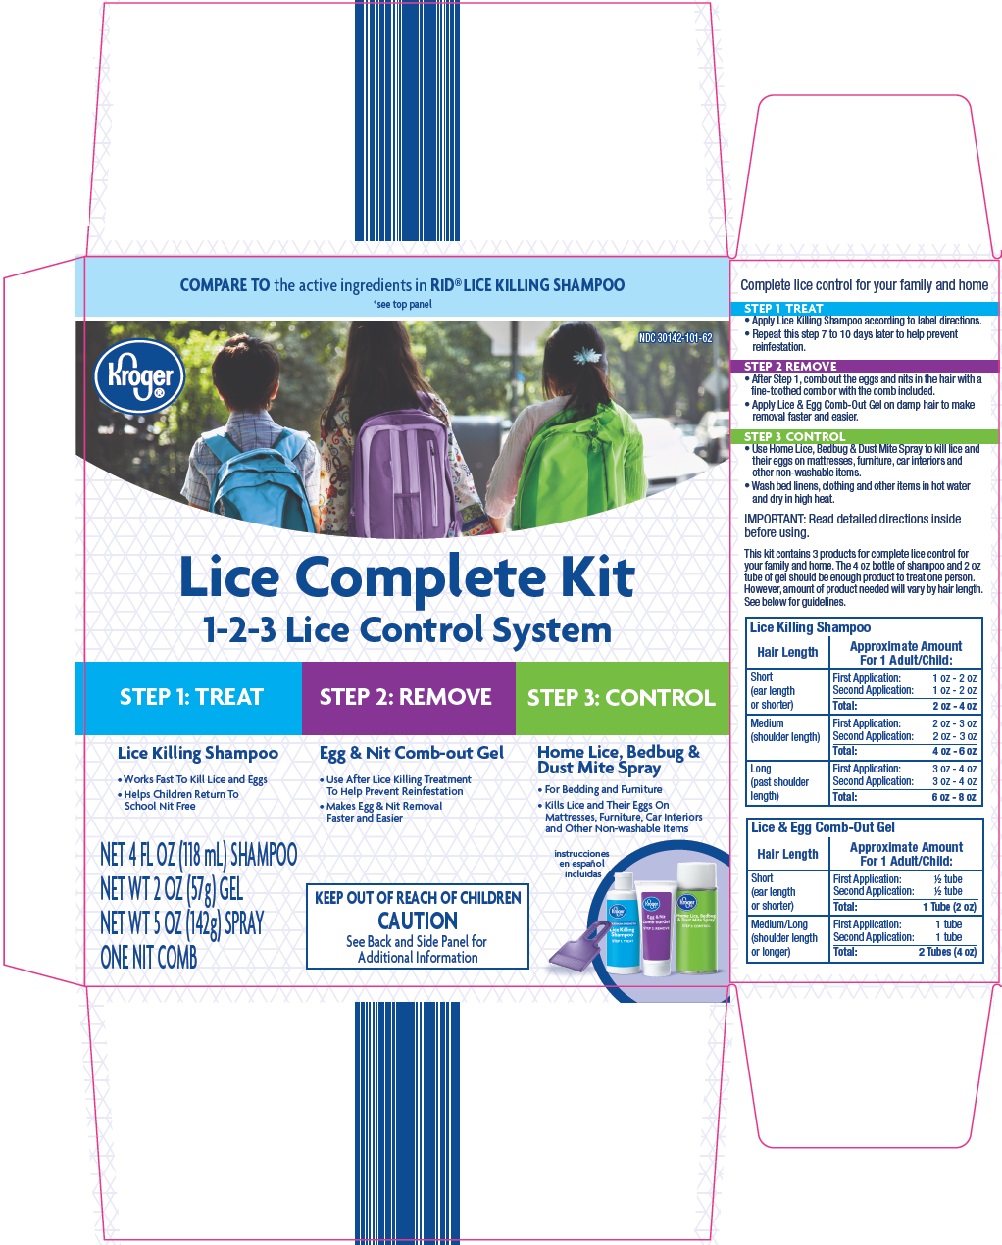 Kroger Lice Complete Kit Image 1